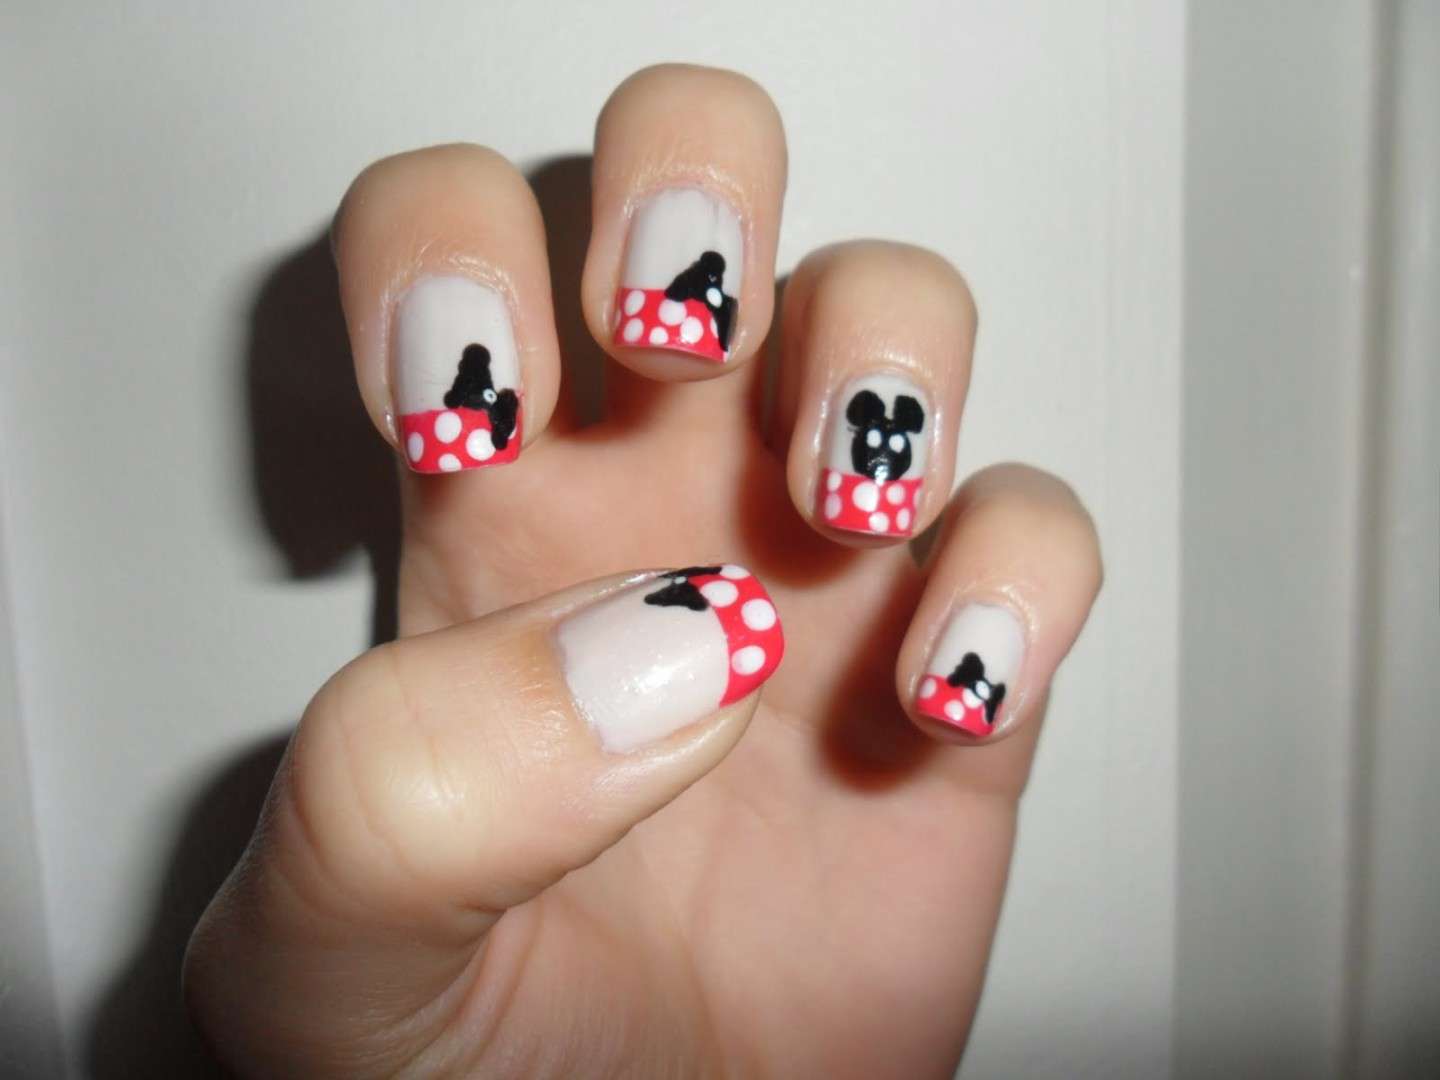 Minnie nails